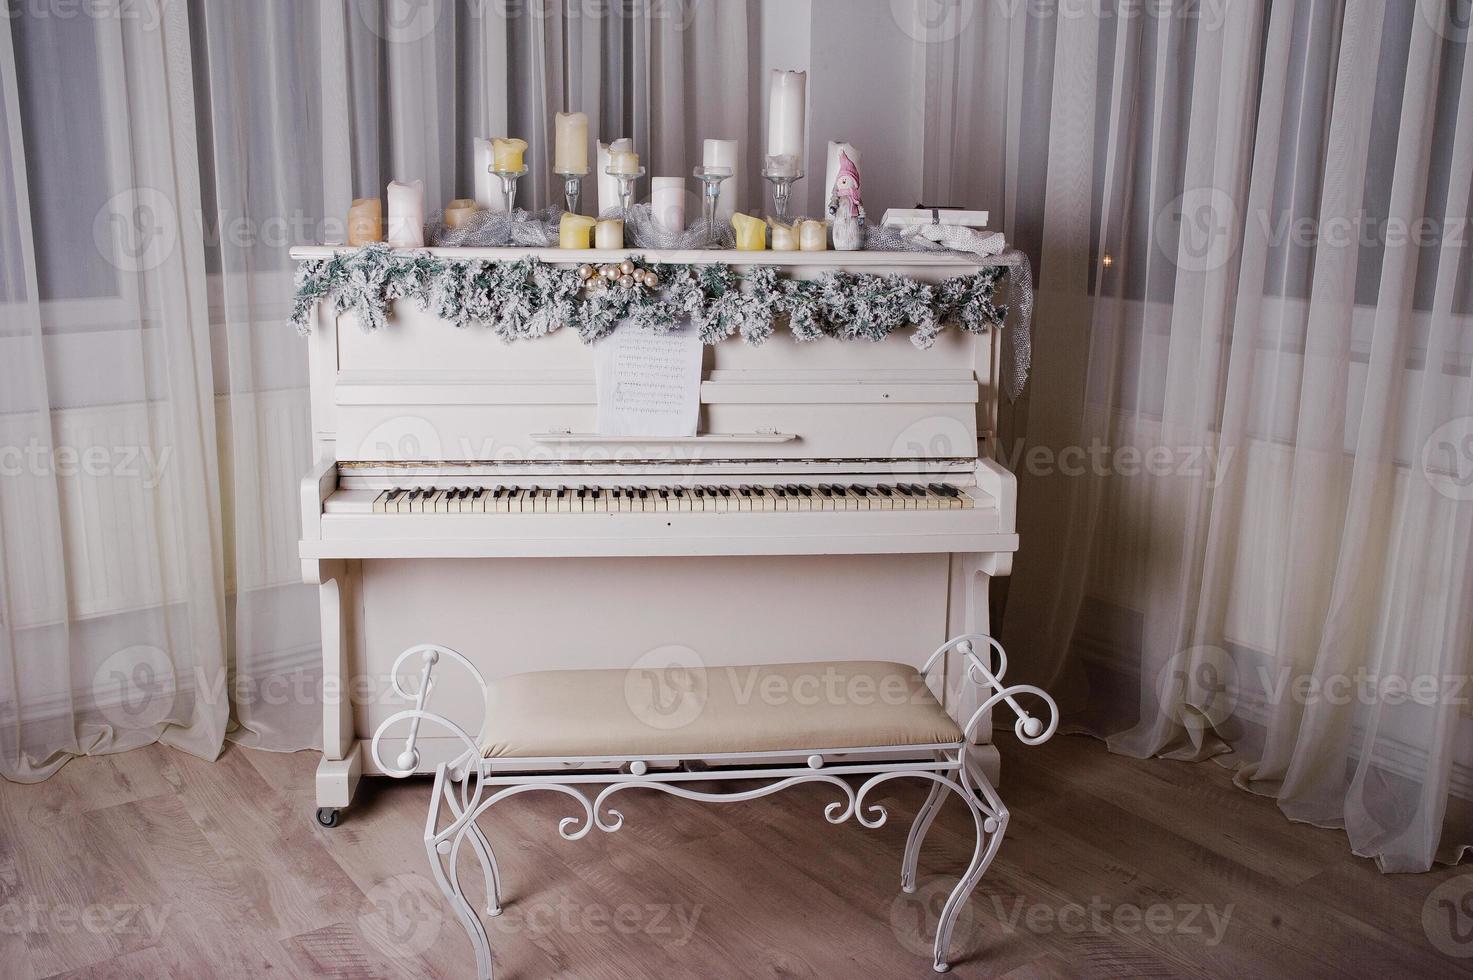 oude piano met nieuwjaarsversieringen, kaarsen. foto